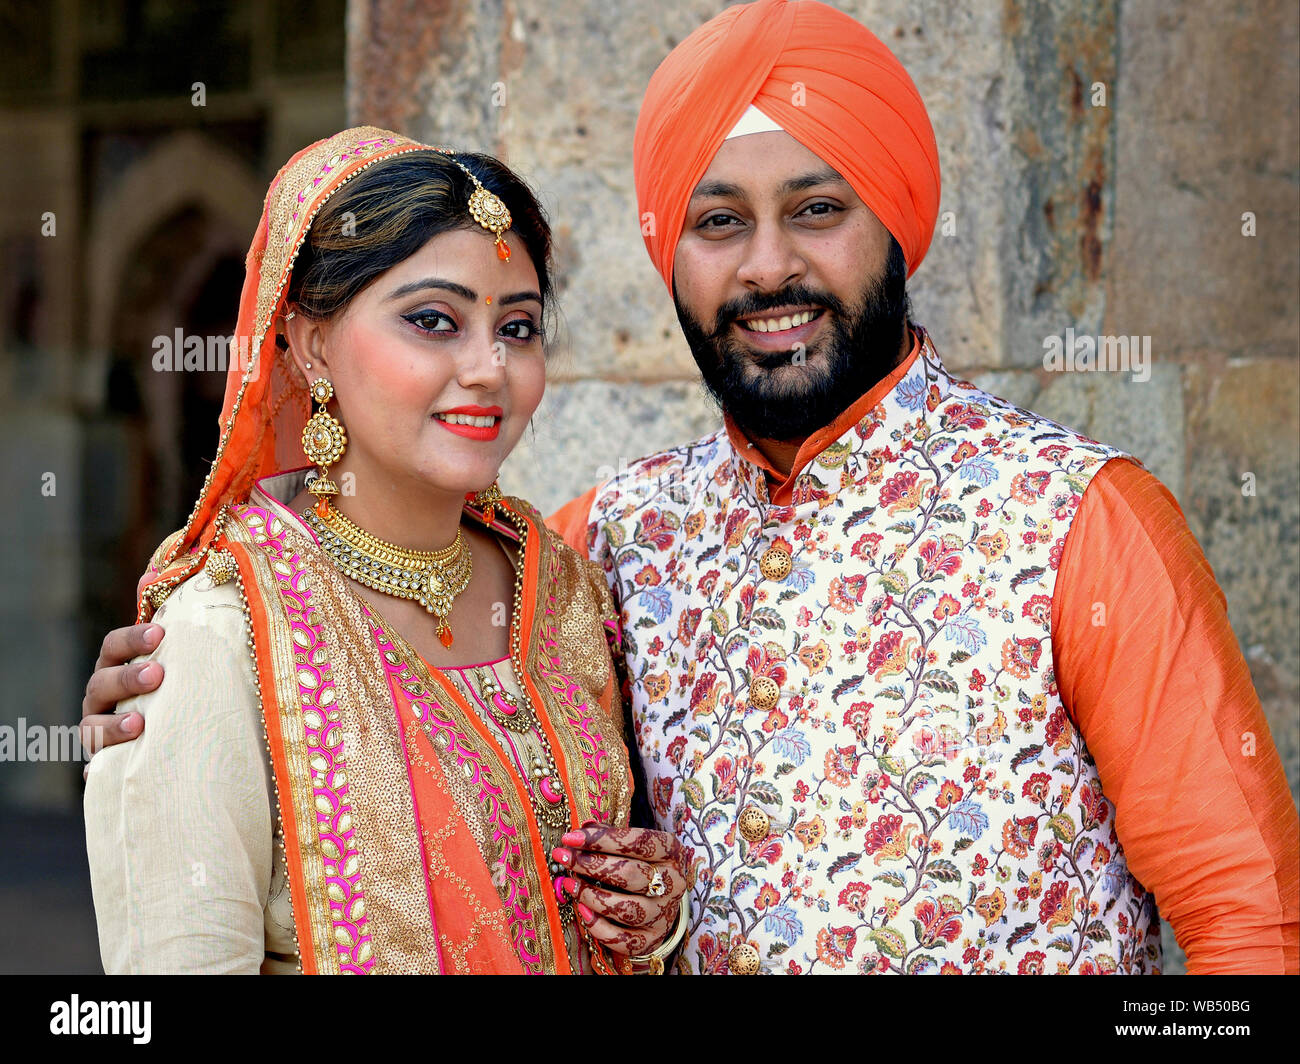 Stilvolle Sikh (Punjabi) Braut und Bräutigam in traditionellen kulturellen Ausstattung für eine Hochzeit Fotographie darstellen. Stockfoto